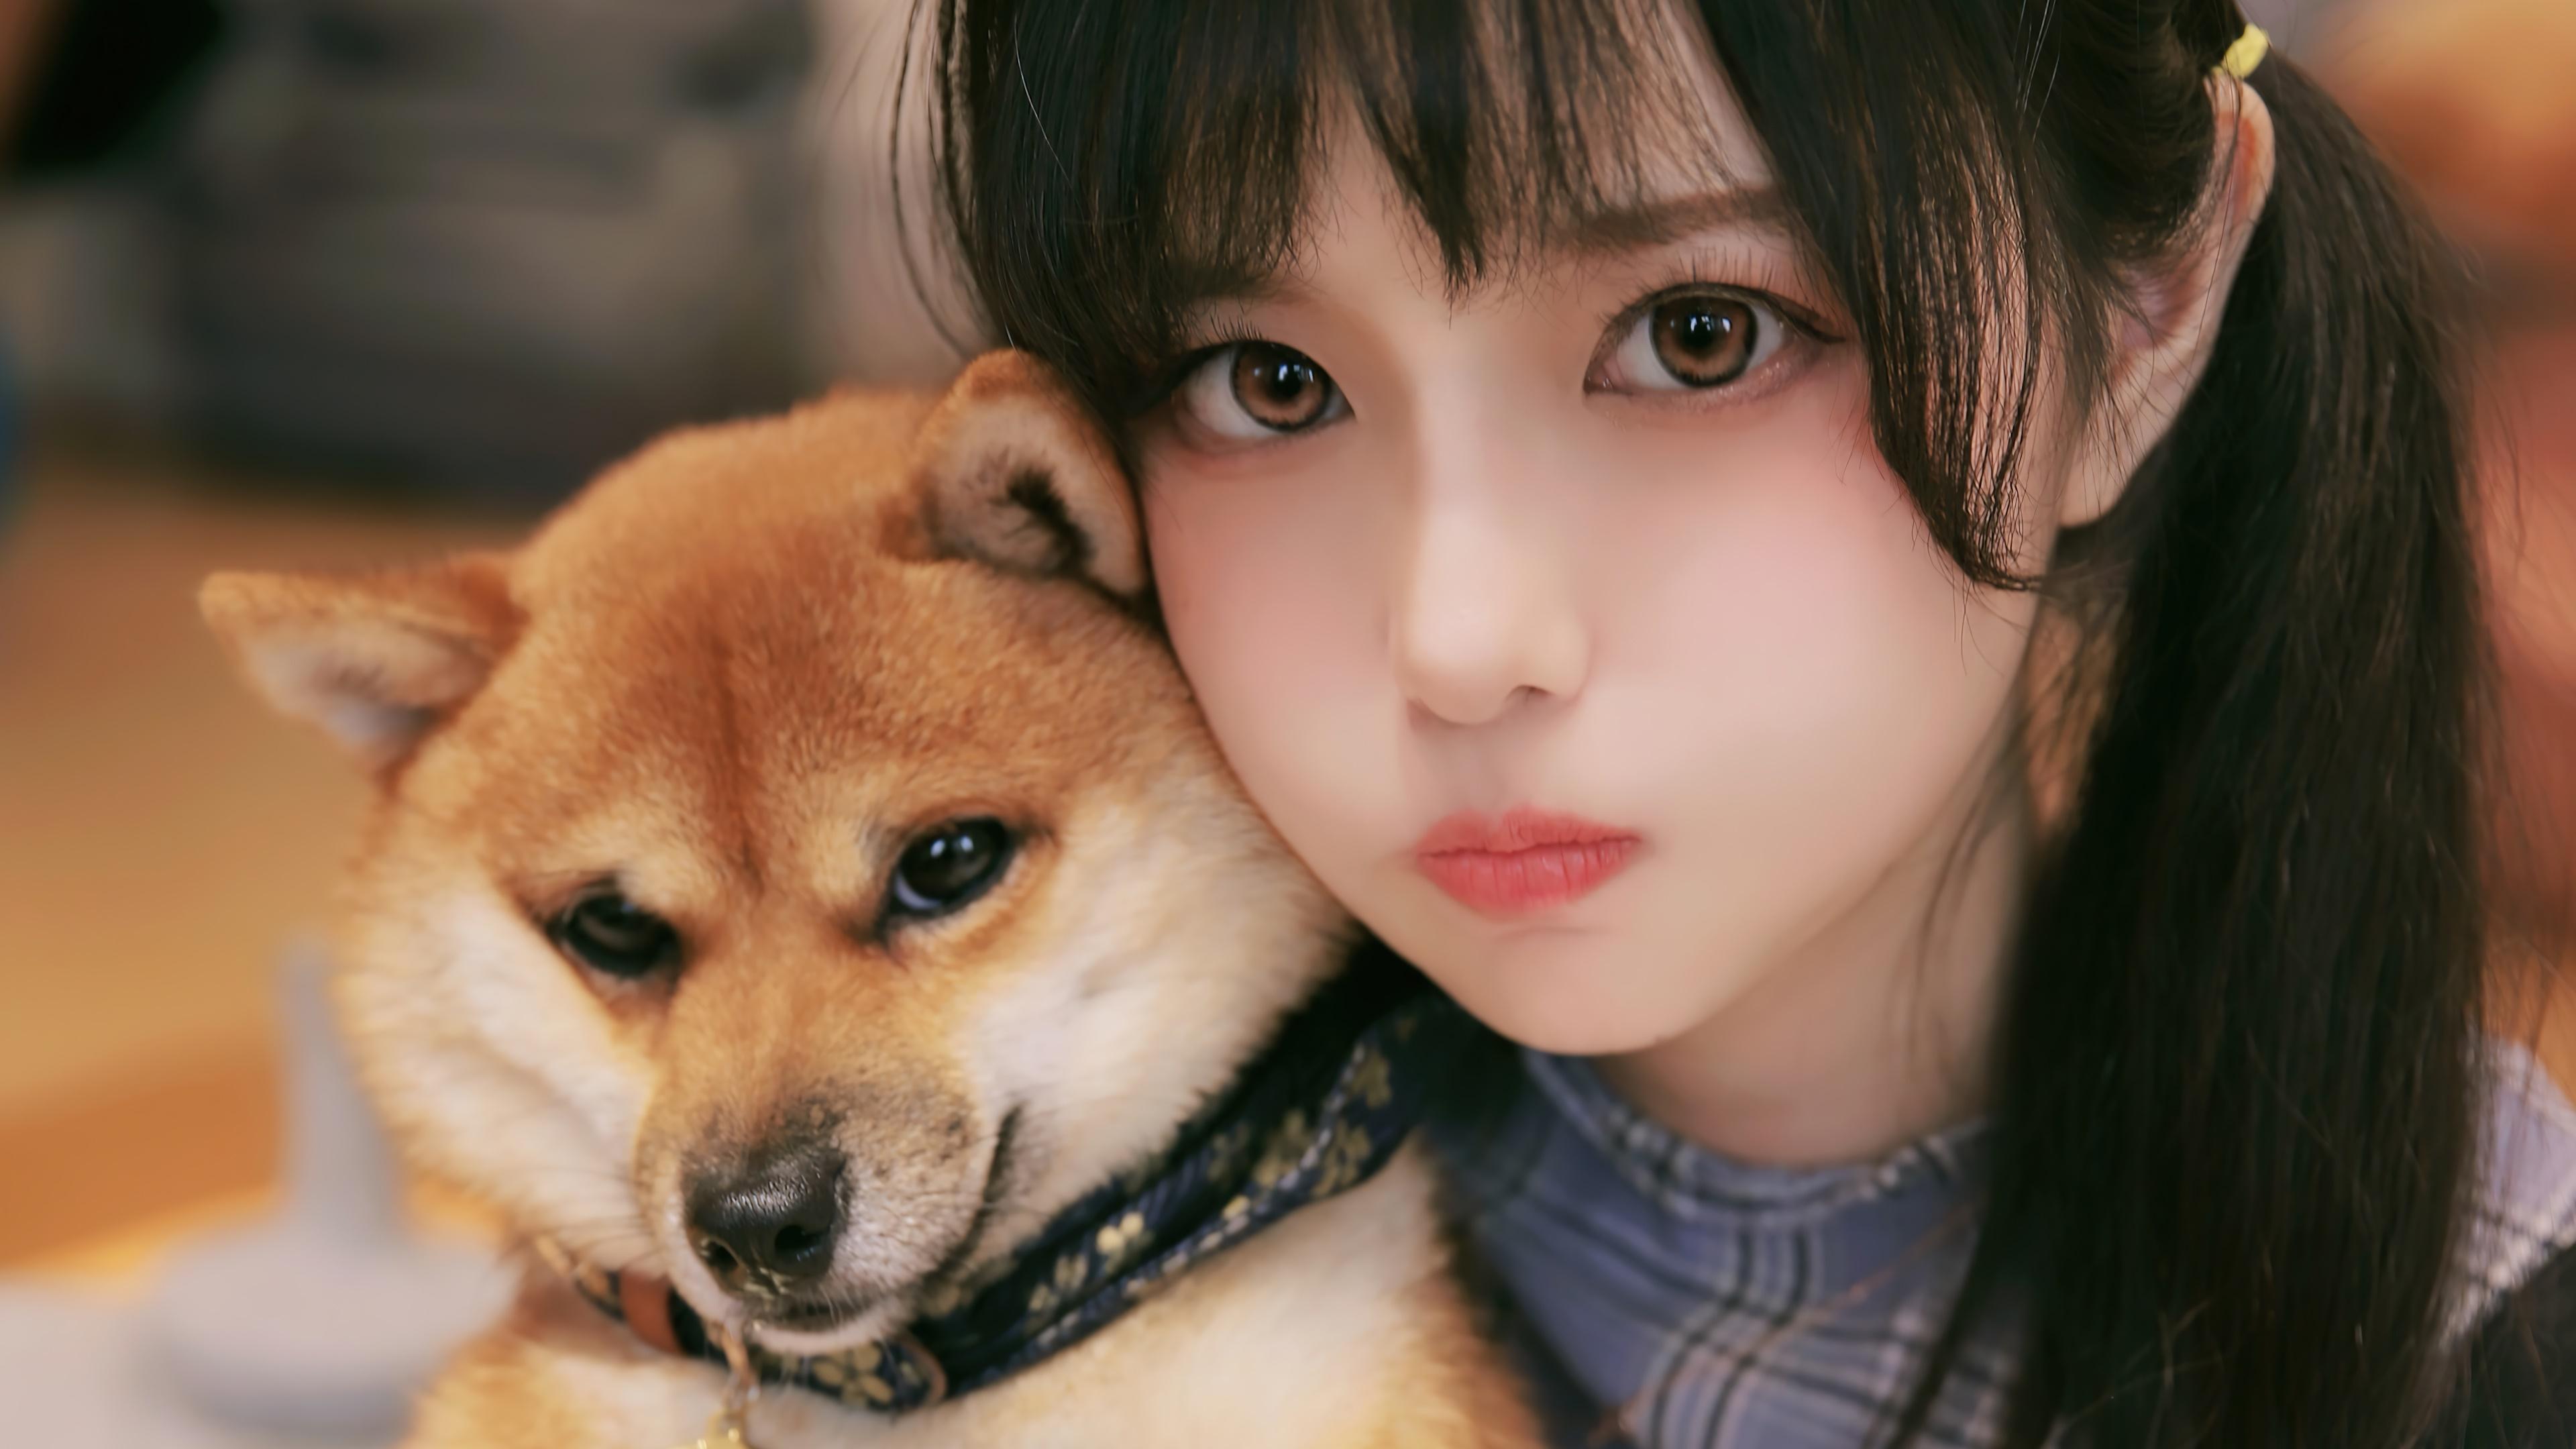 HD wallpaper, Cute, Wallpaper, Beautiful, With Shiba Inu, Hd, Girl, Dog, 4K, Asian, Japanese